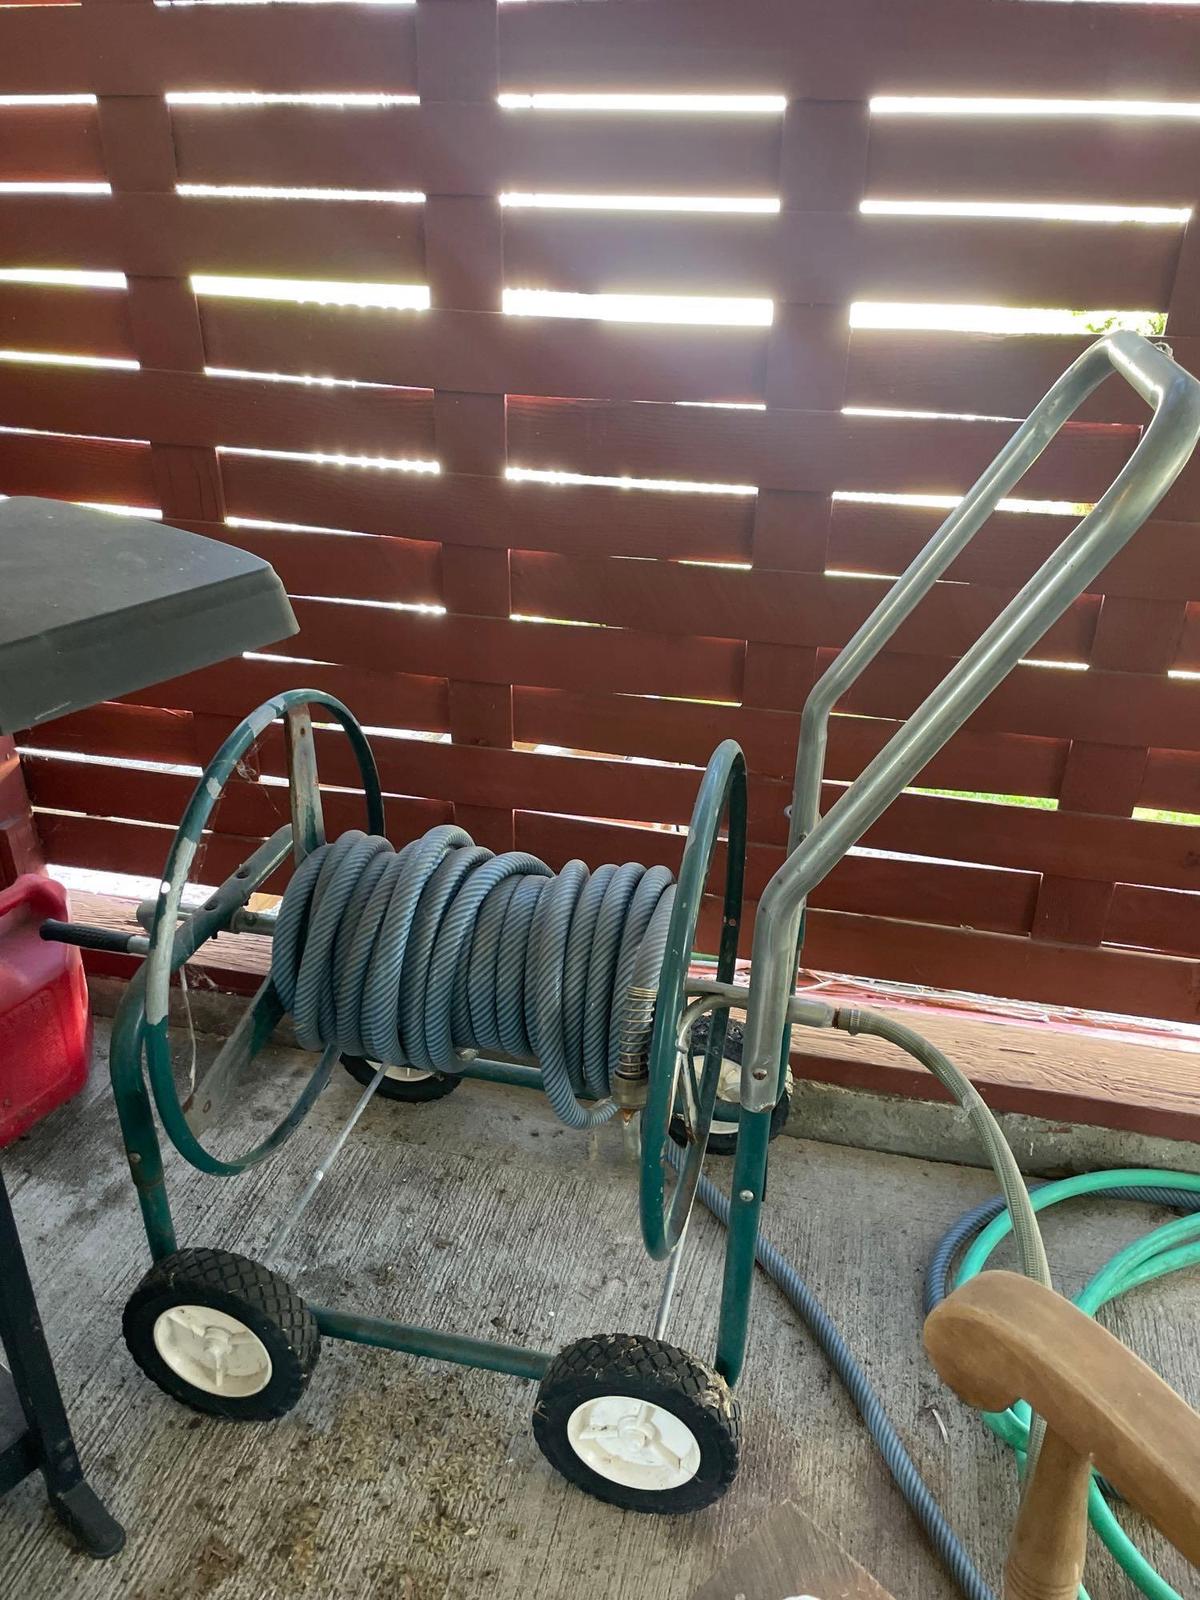 Hose Storage Cart and hoses